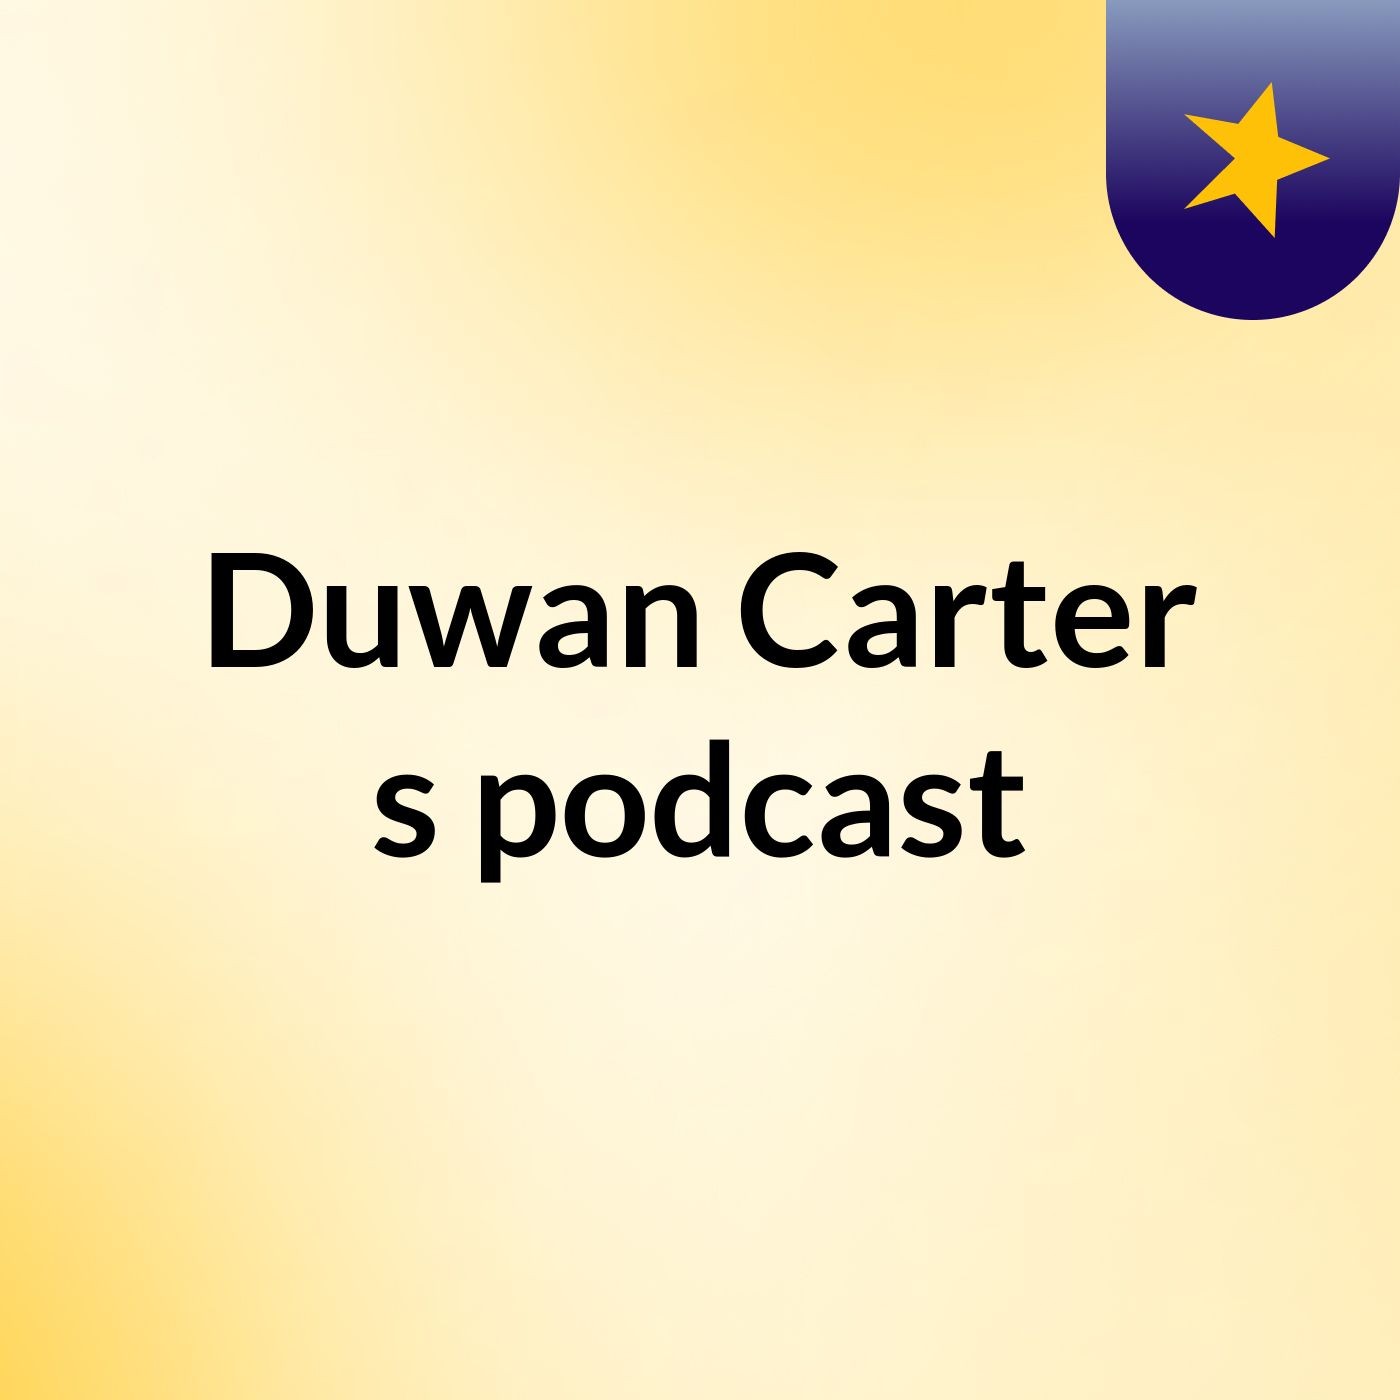 Duwan Carter's podcast